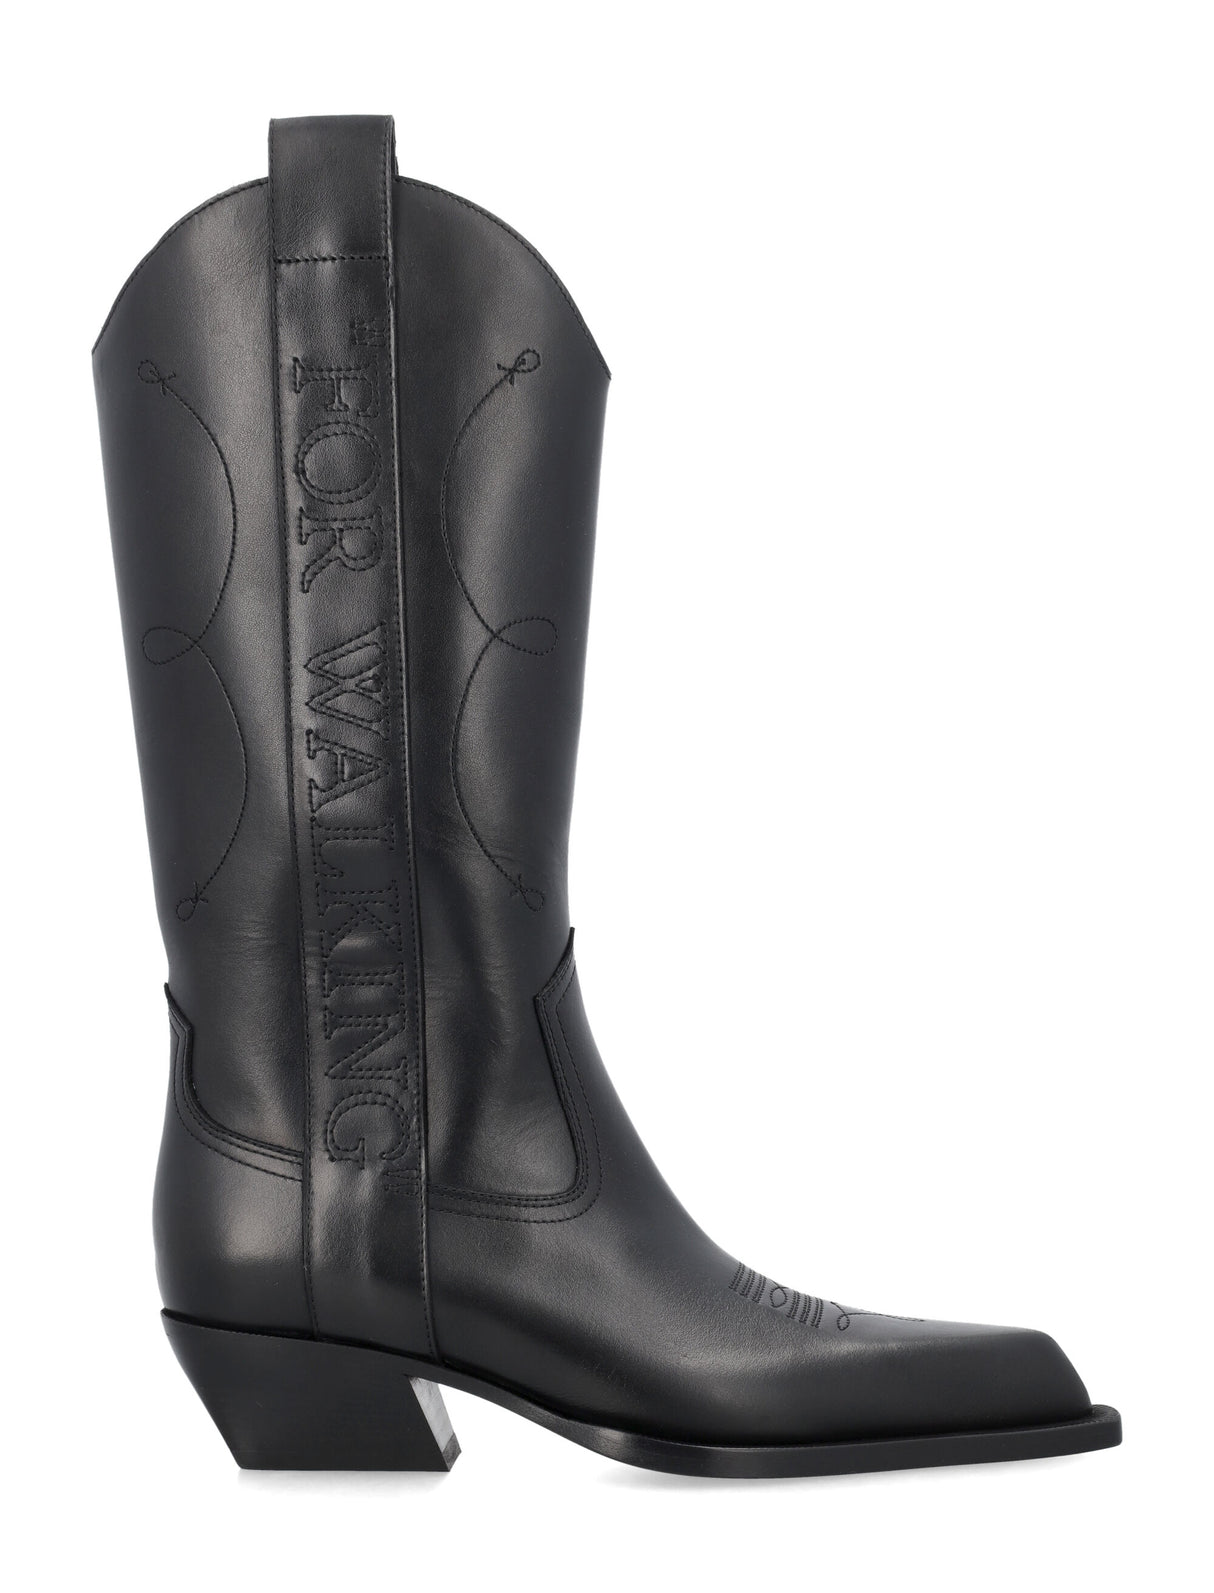 黑色西式女靴-適合雨天穿著!